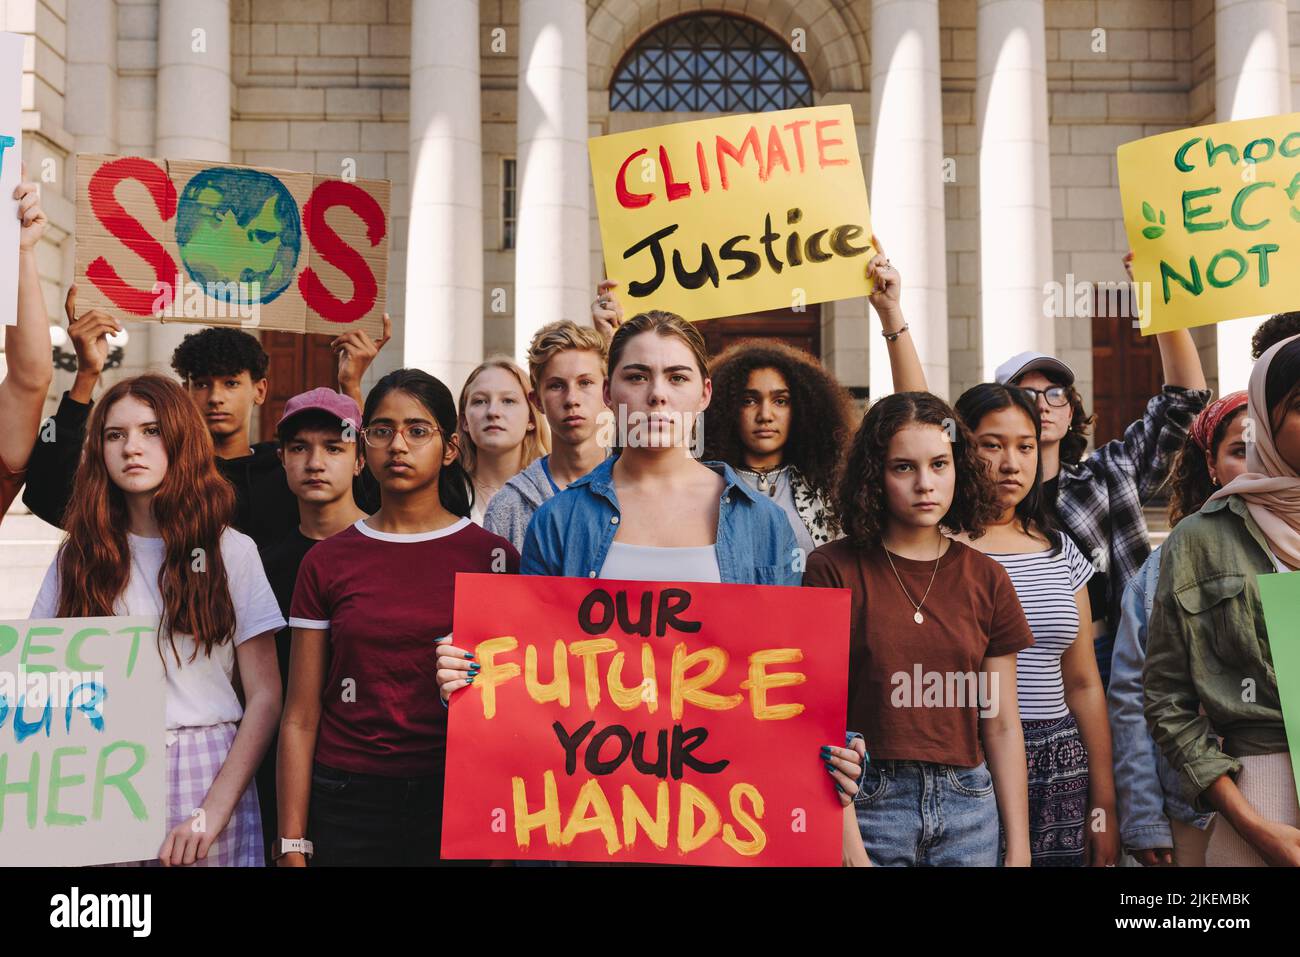 Adolescentes multiculturales que realizan una protesta por el cambio climático en la ciudad. Grupo de jóvenes activistas sosteniendo pancartas y pancartas mientras marchaba por el clima Foto de stock